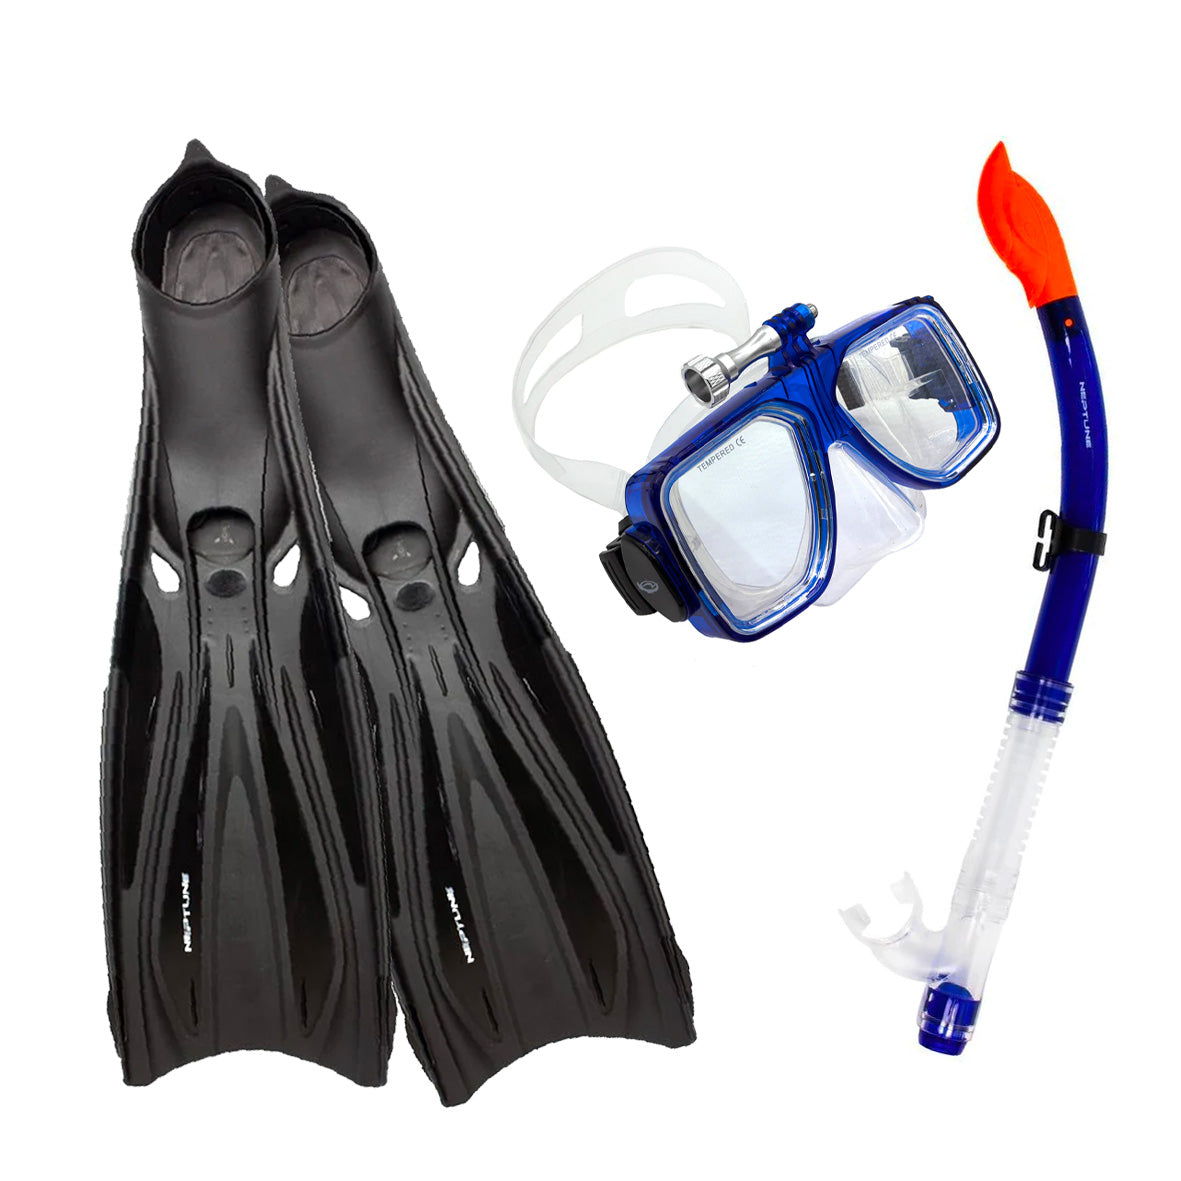 Neptune GP Reef Package Bargain Buster Pack. Mask Snorkel & Fins